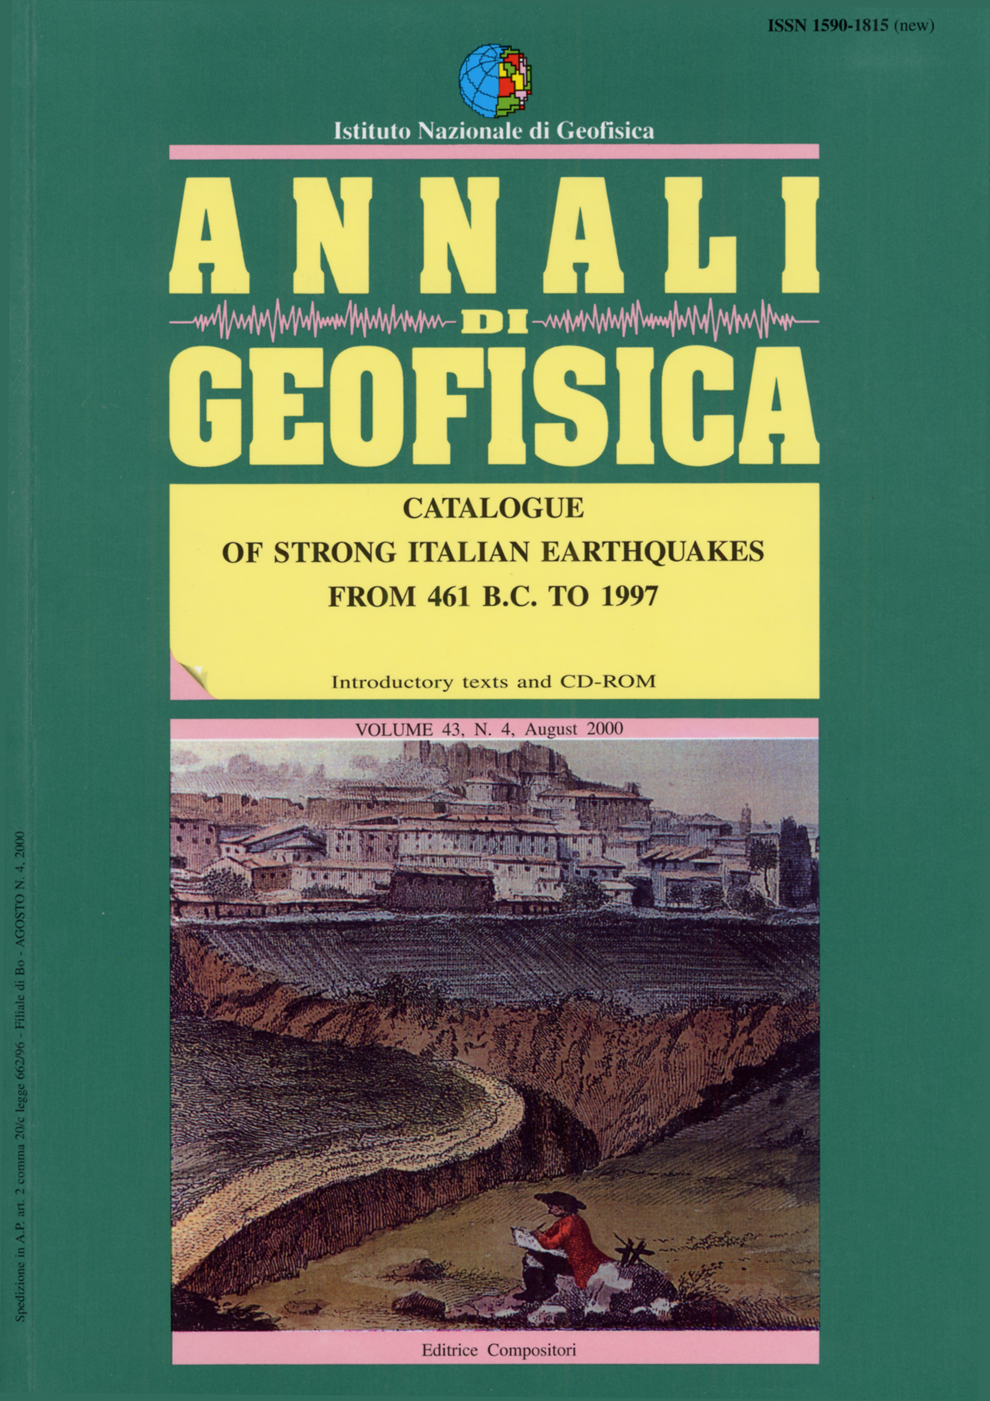 Enzo Boschi, Emanuela Guidoboni, Graziano Ferrari, Dante Mariotti, Gianluca Valensise e Paolo Gasperini - CFTI3 - Catalogue of strong Italian earthquakes from 461 B.C. to 1997 (2000)